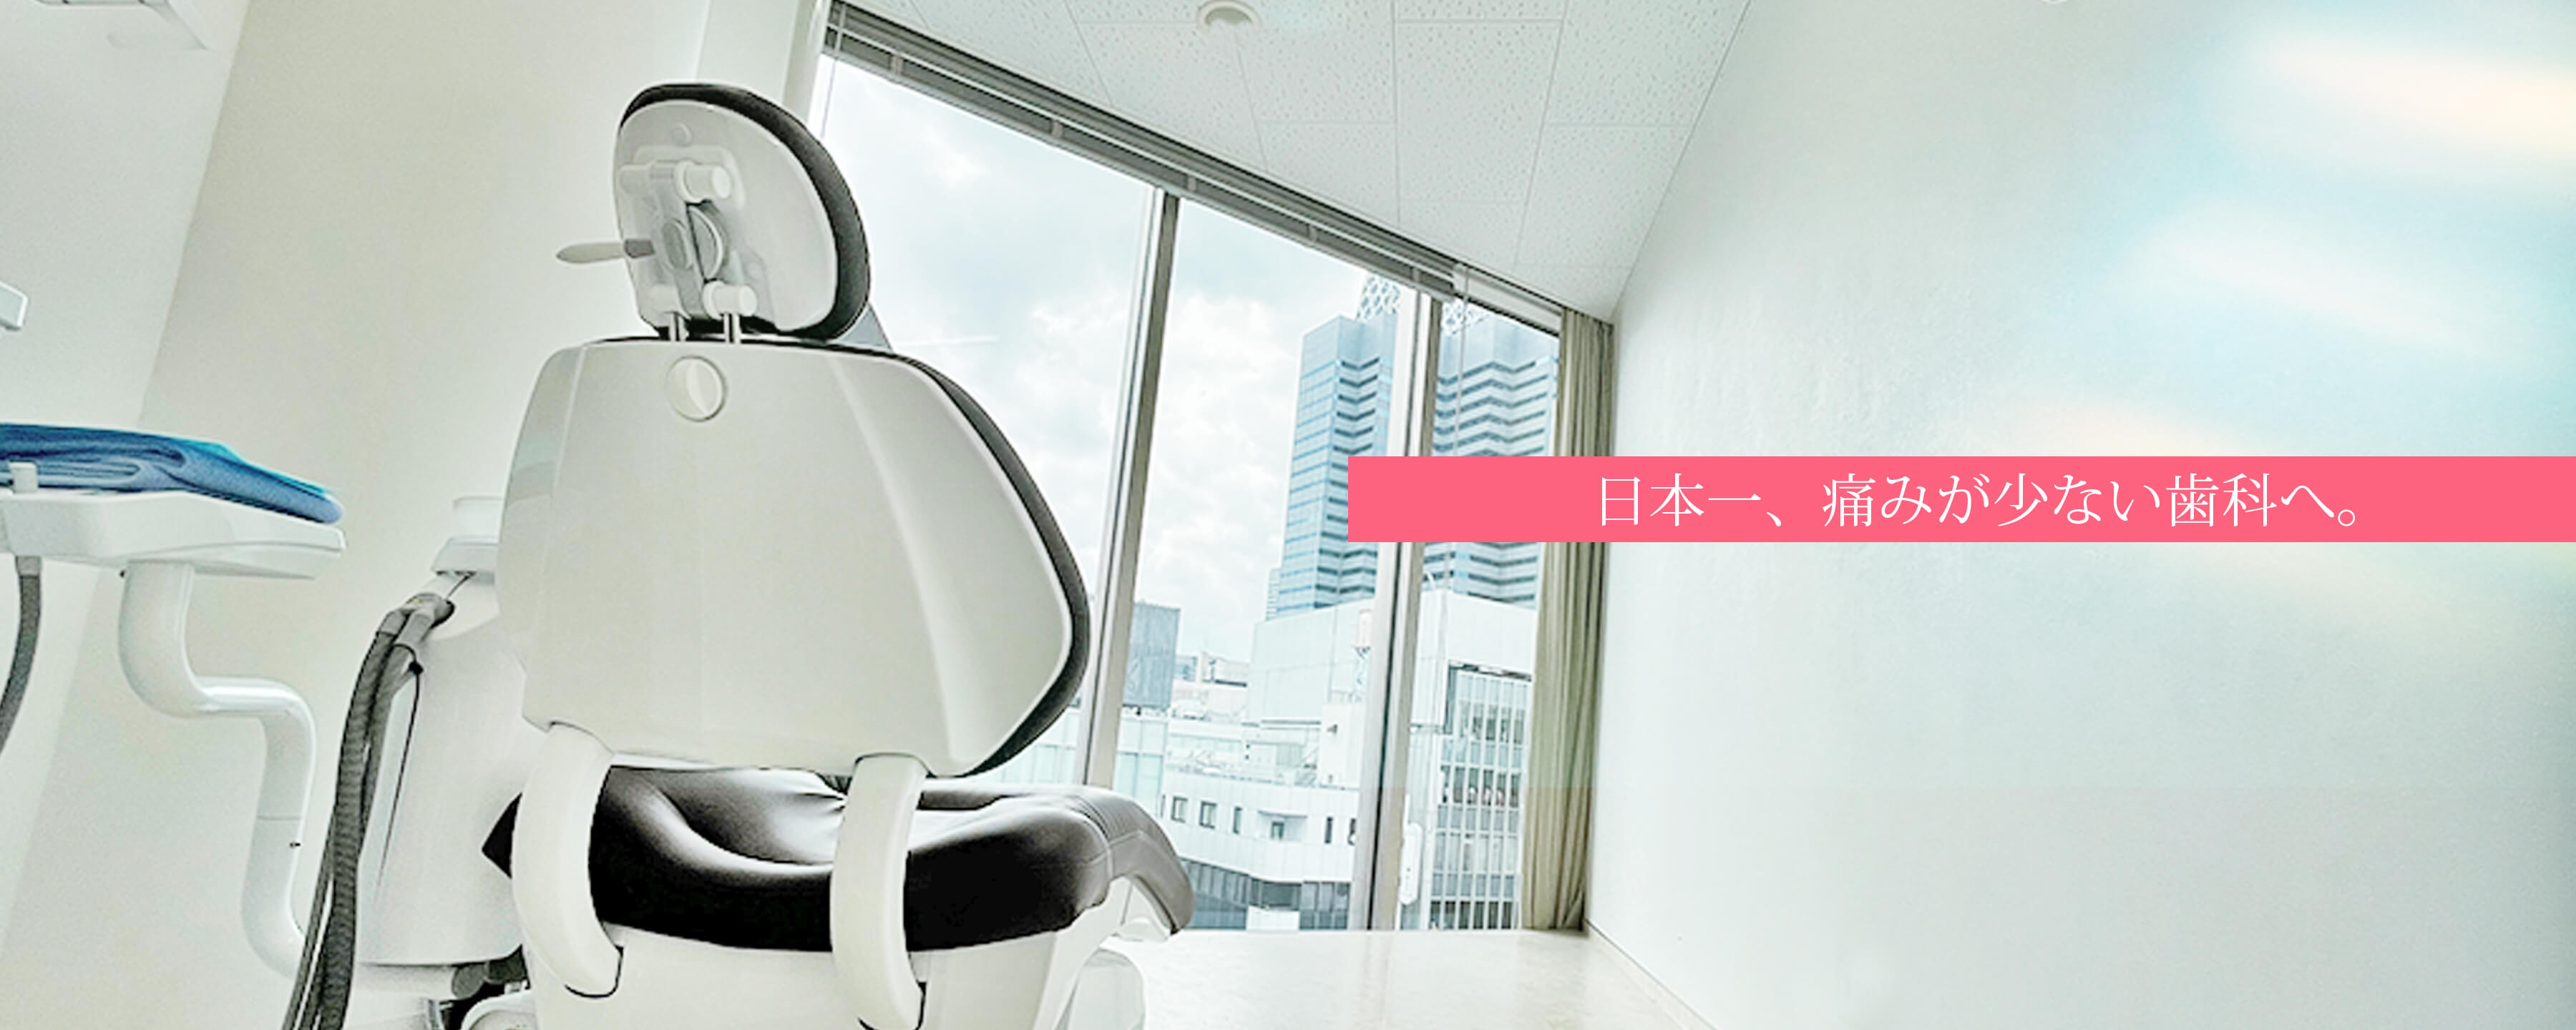 日本一、痛みが少ない歯科へ。